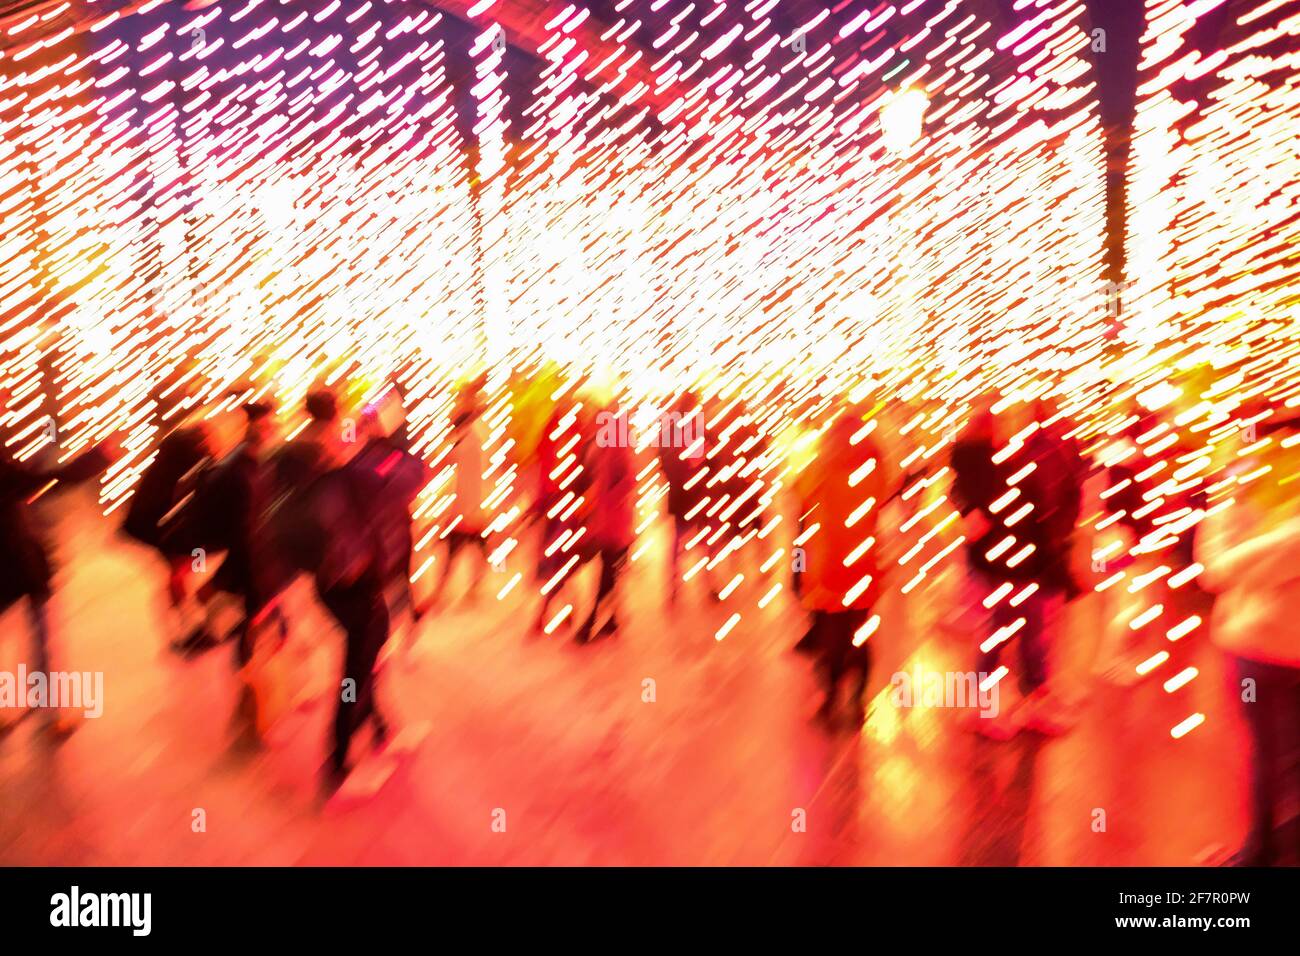 14.12.2019, Bruessel, Belgien - Touristen in einer Lichtinstallation in der Vorweihnachtszeit in Bruessel an der place de l´ Albertine Foto Stock